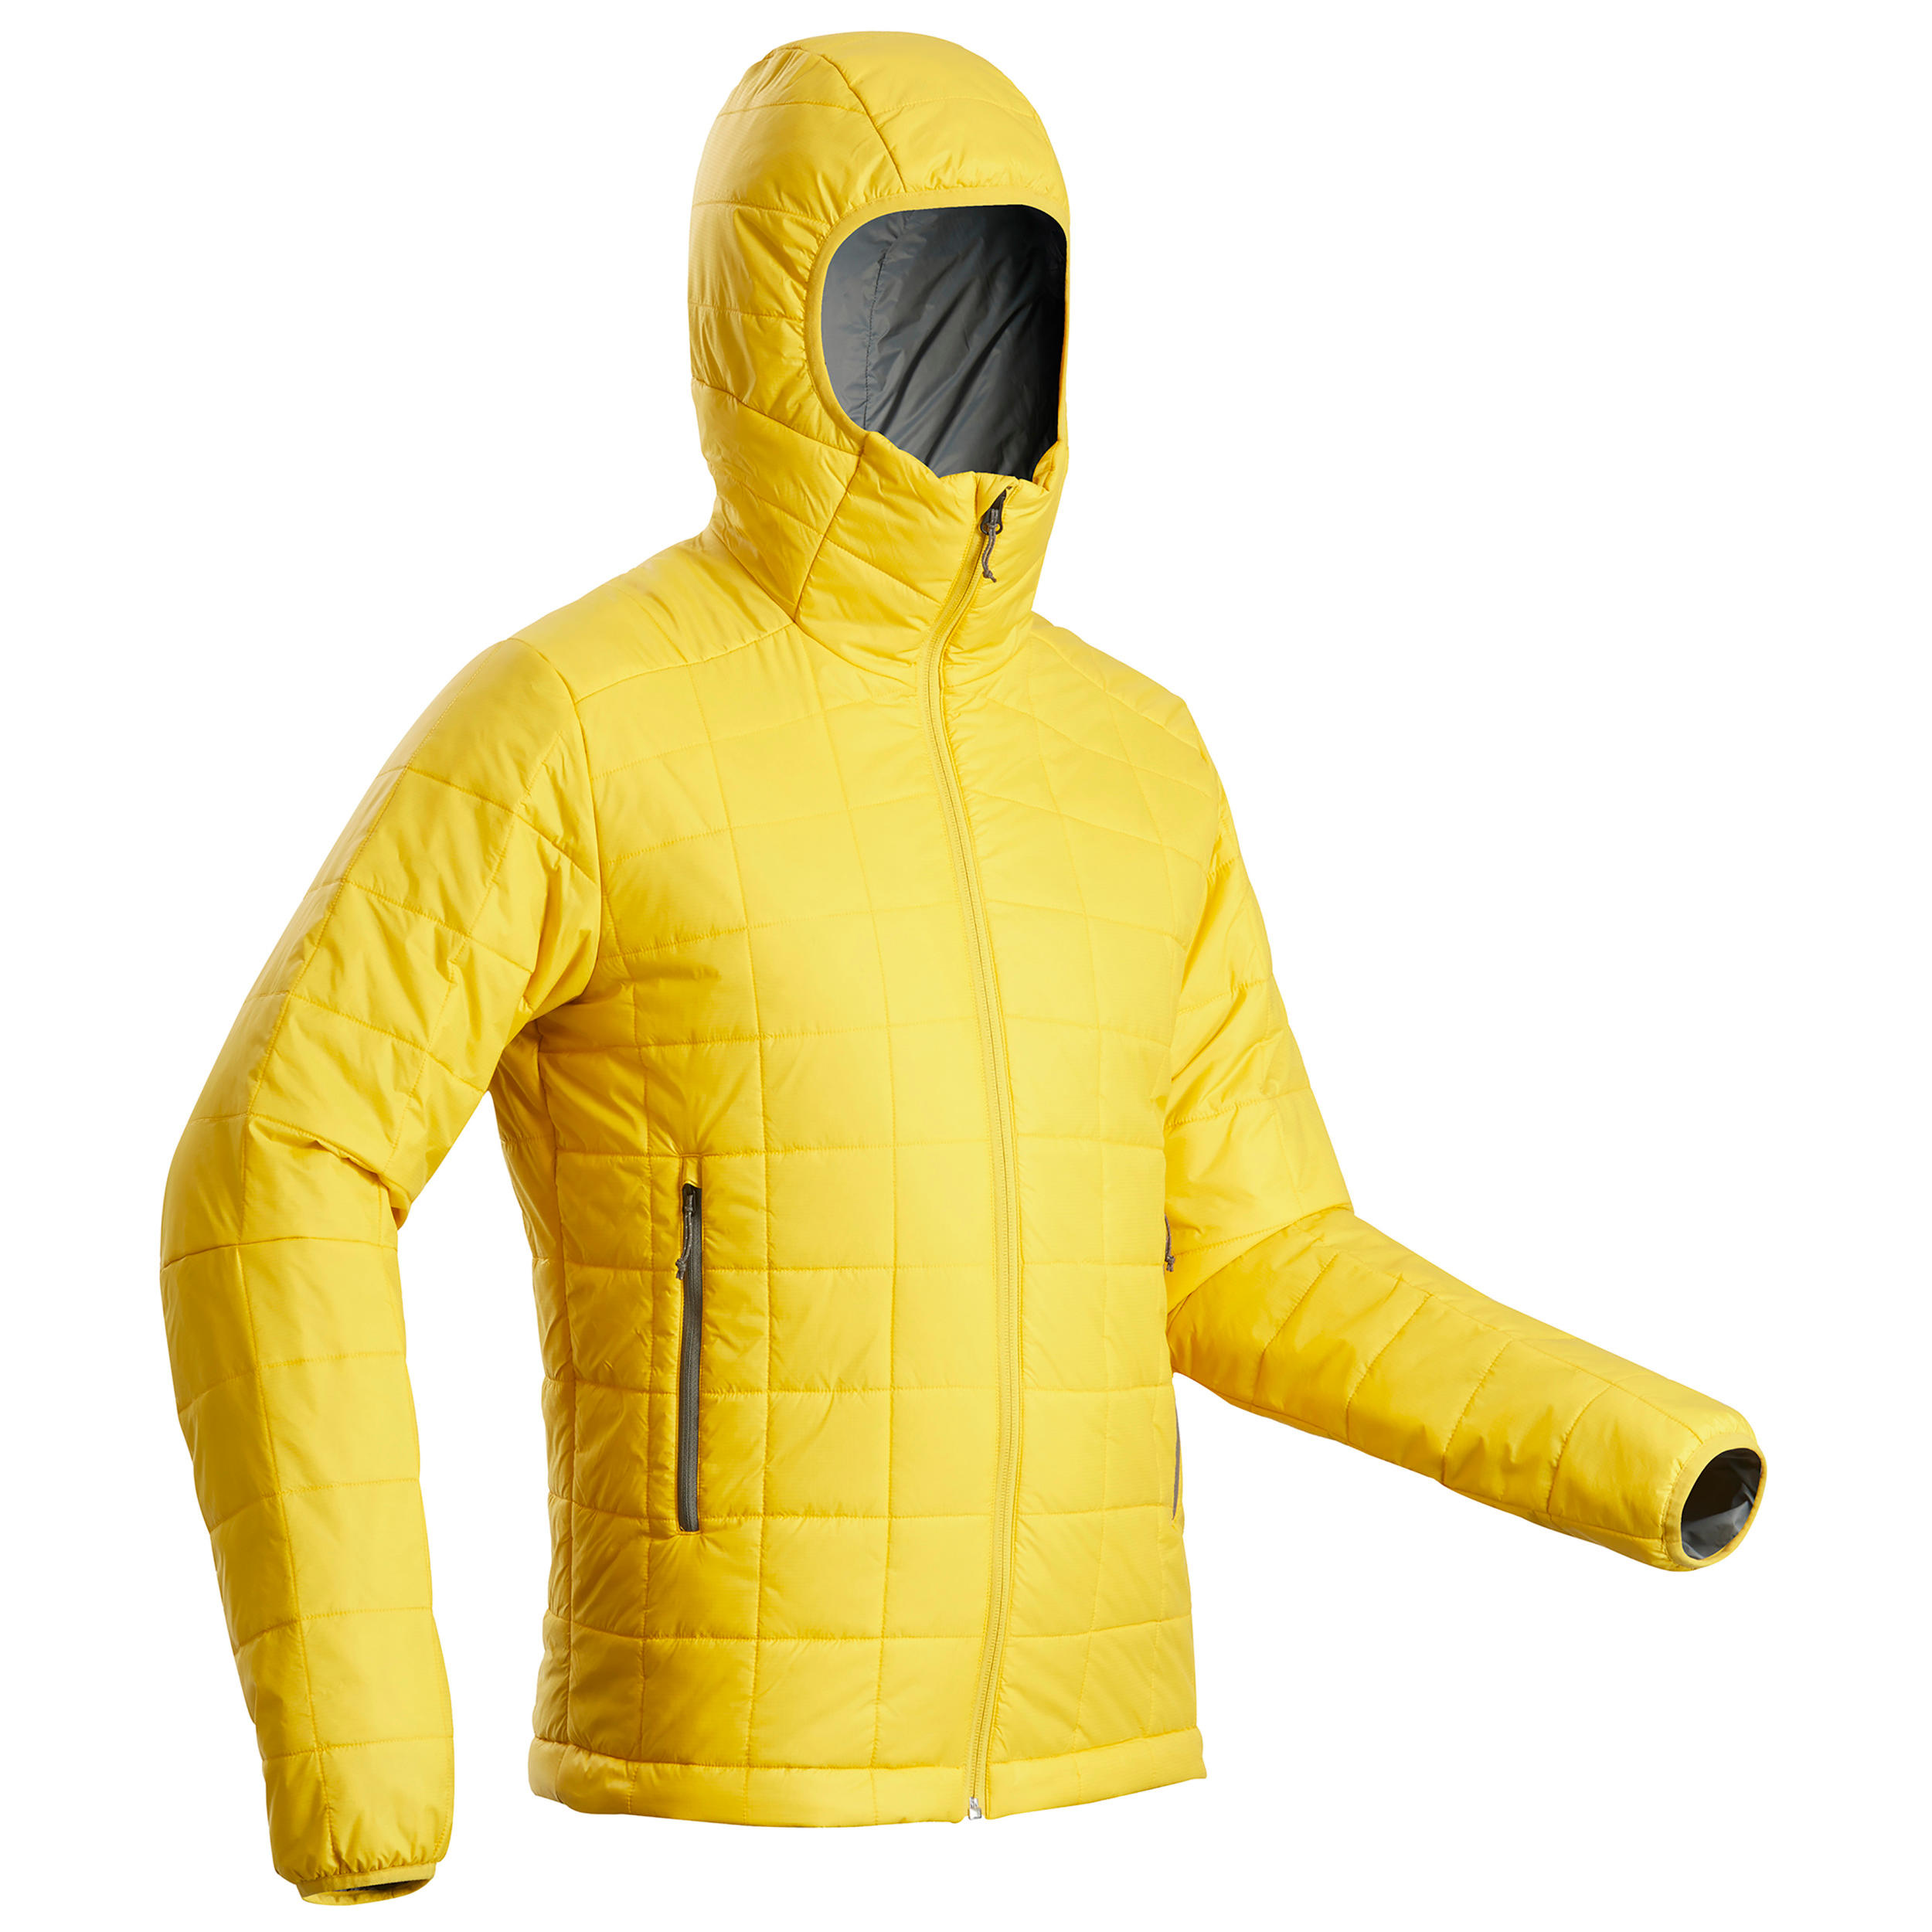 decathlon synthetic jacket